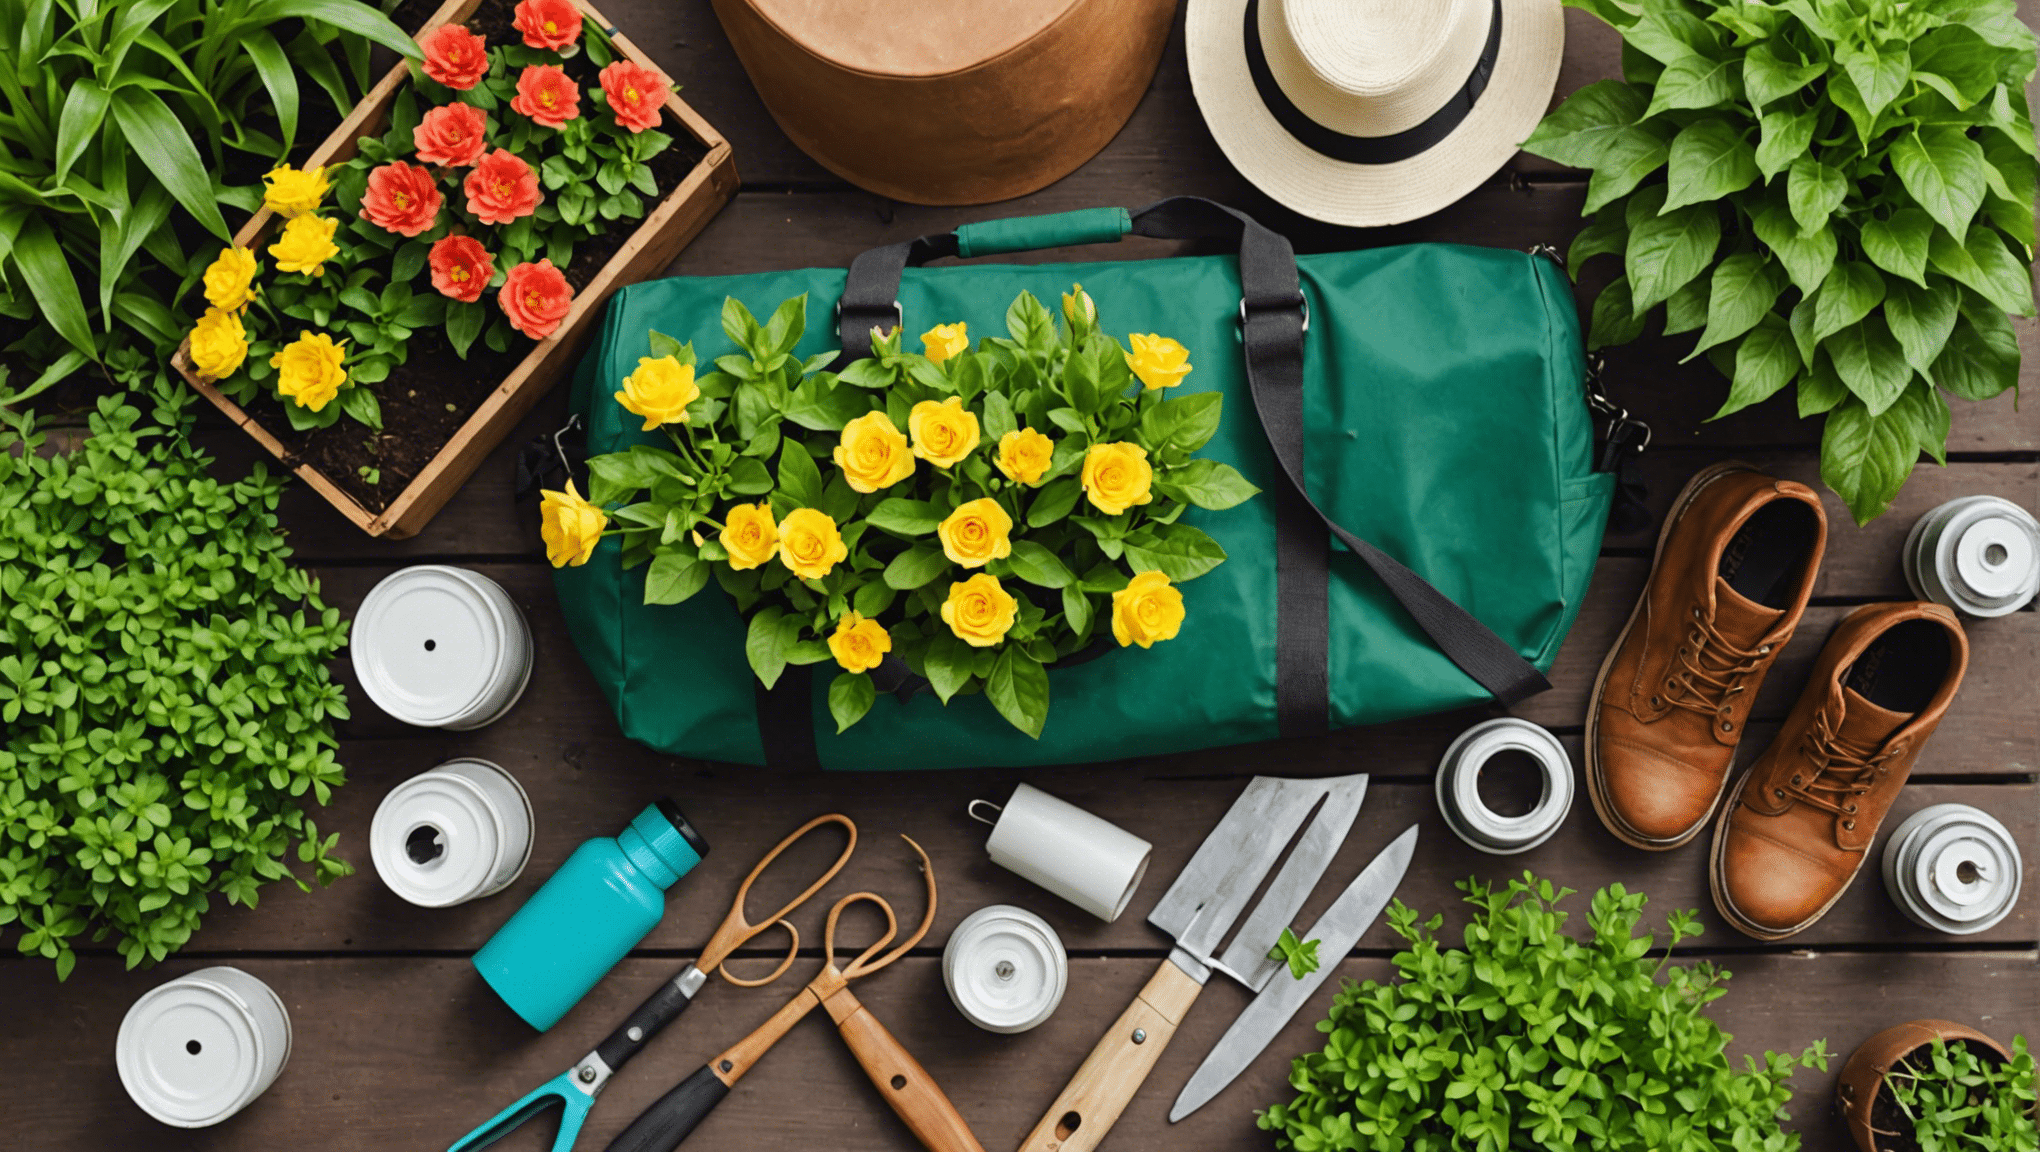 Entdecken Sie die Artikel, die Sie in Ihrer Gartentasche unbedingt mitnehmen sollten, damit die Gartenarbeit problemlos vonstatten geht.